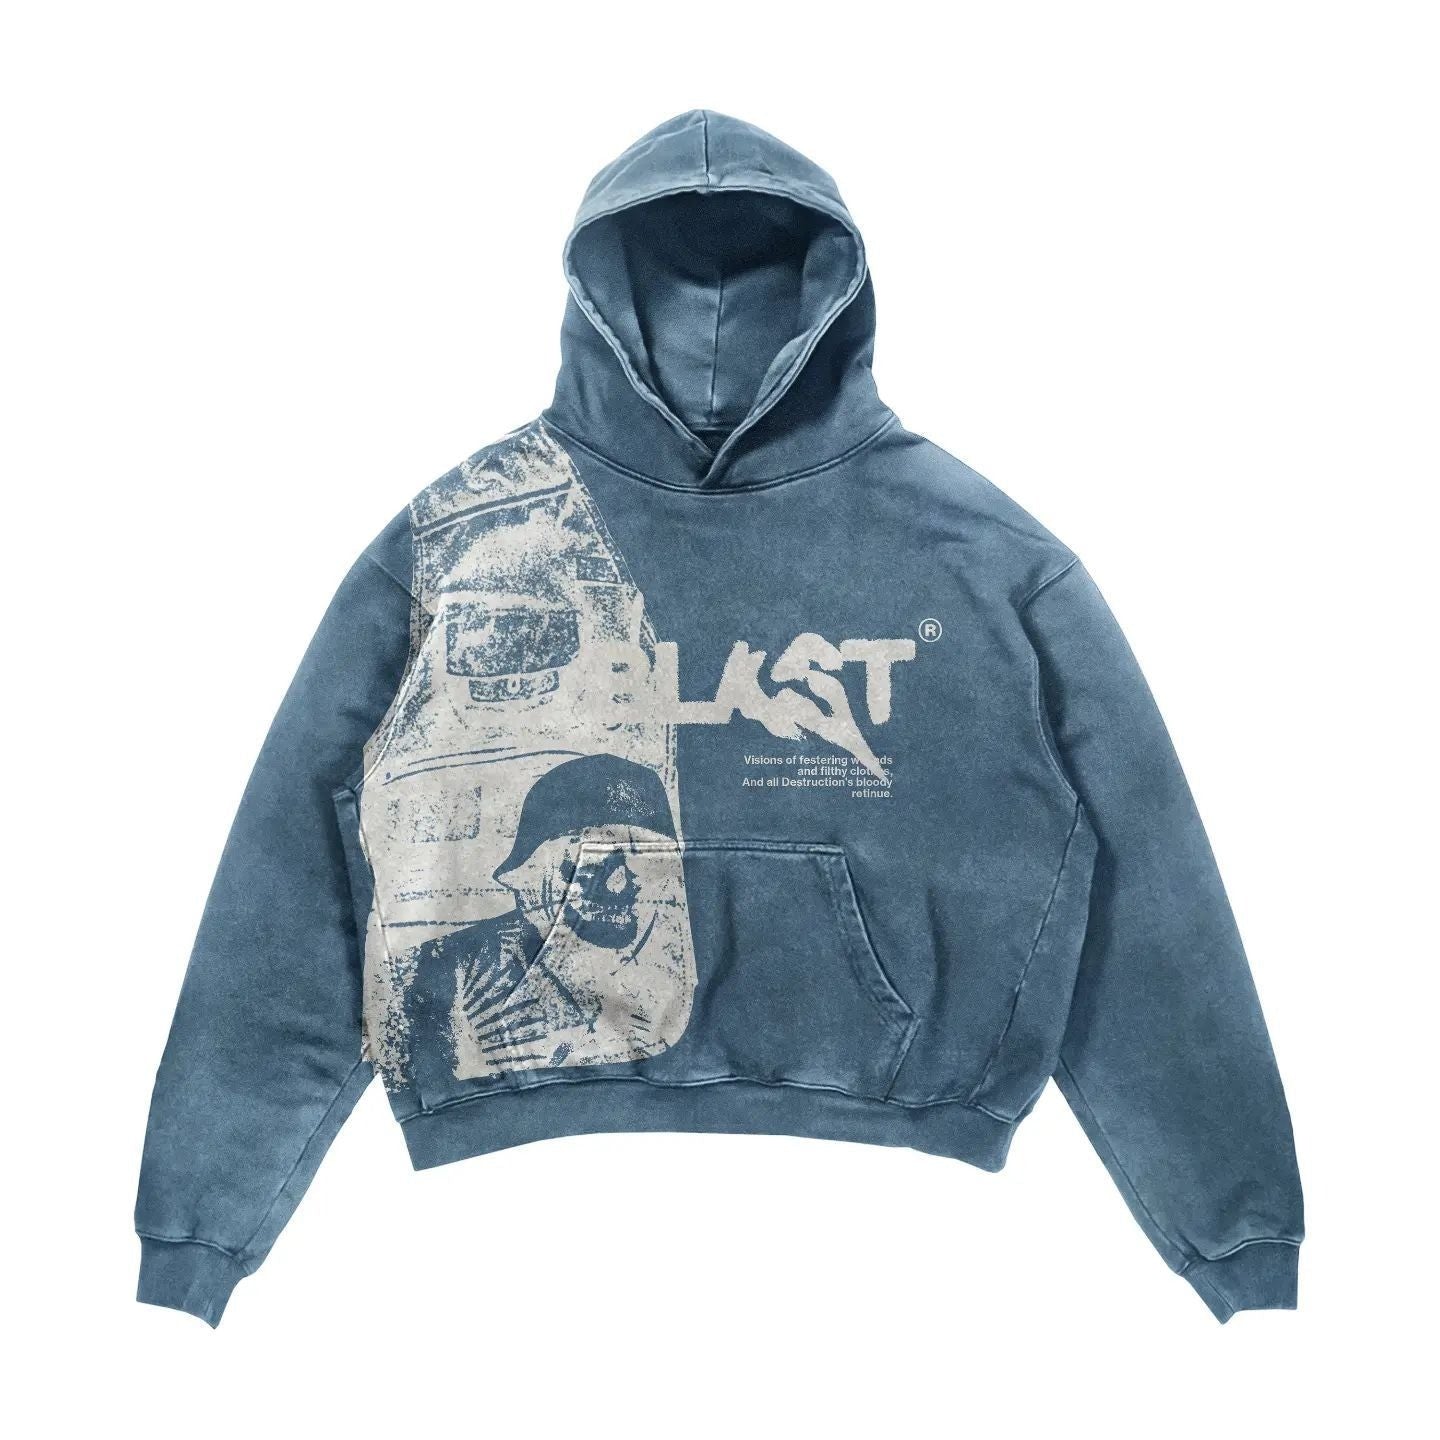 Punk Urban Printed Hoodie Sweatshirt - Blue / M -